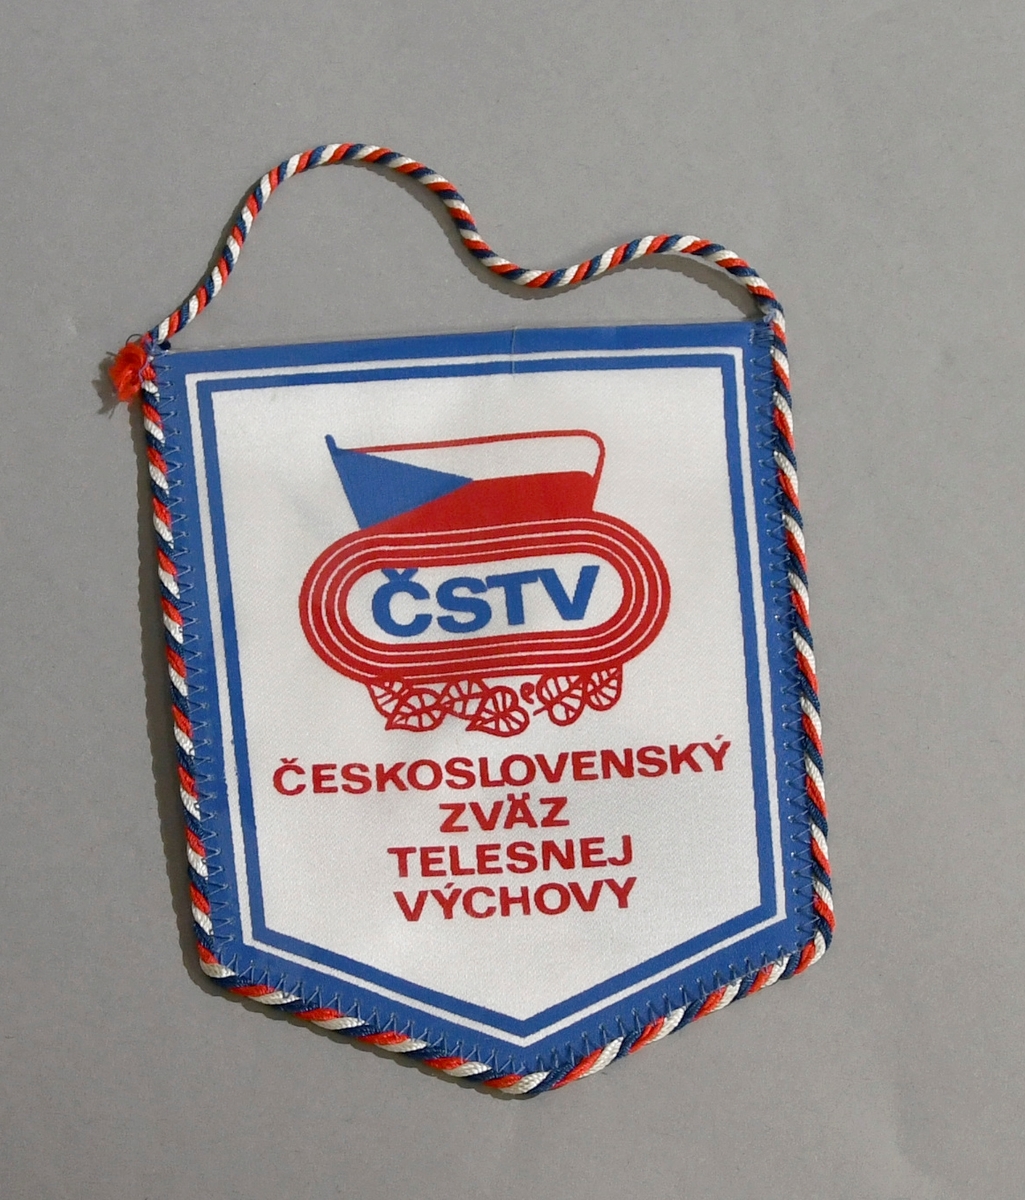 Skjoldformet vimpel fra Tsjekkoslovakia, med bånd i rødt, hvitt og blått rundt kanten, og det tsjekkiske flagget med tekst.